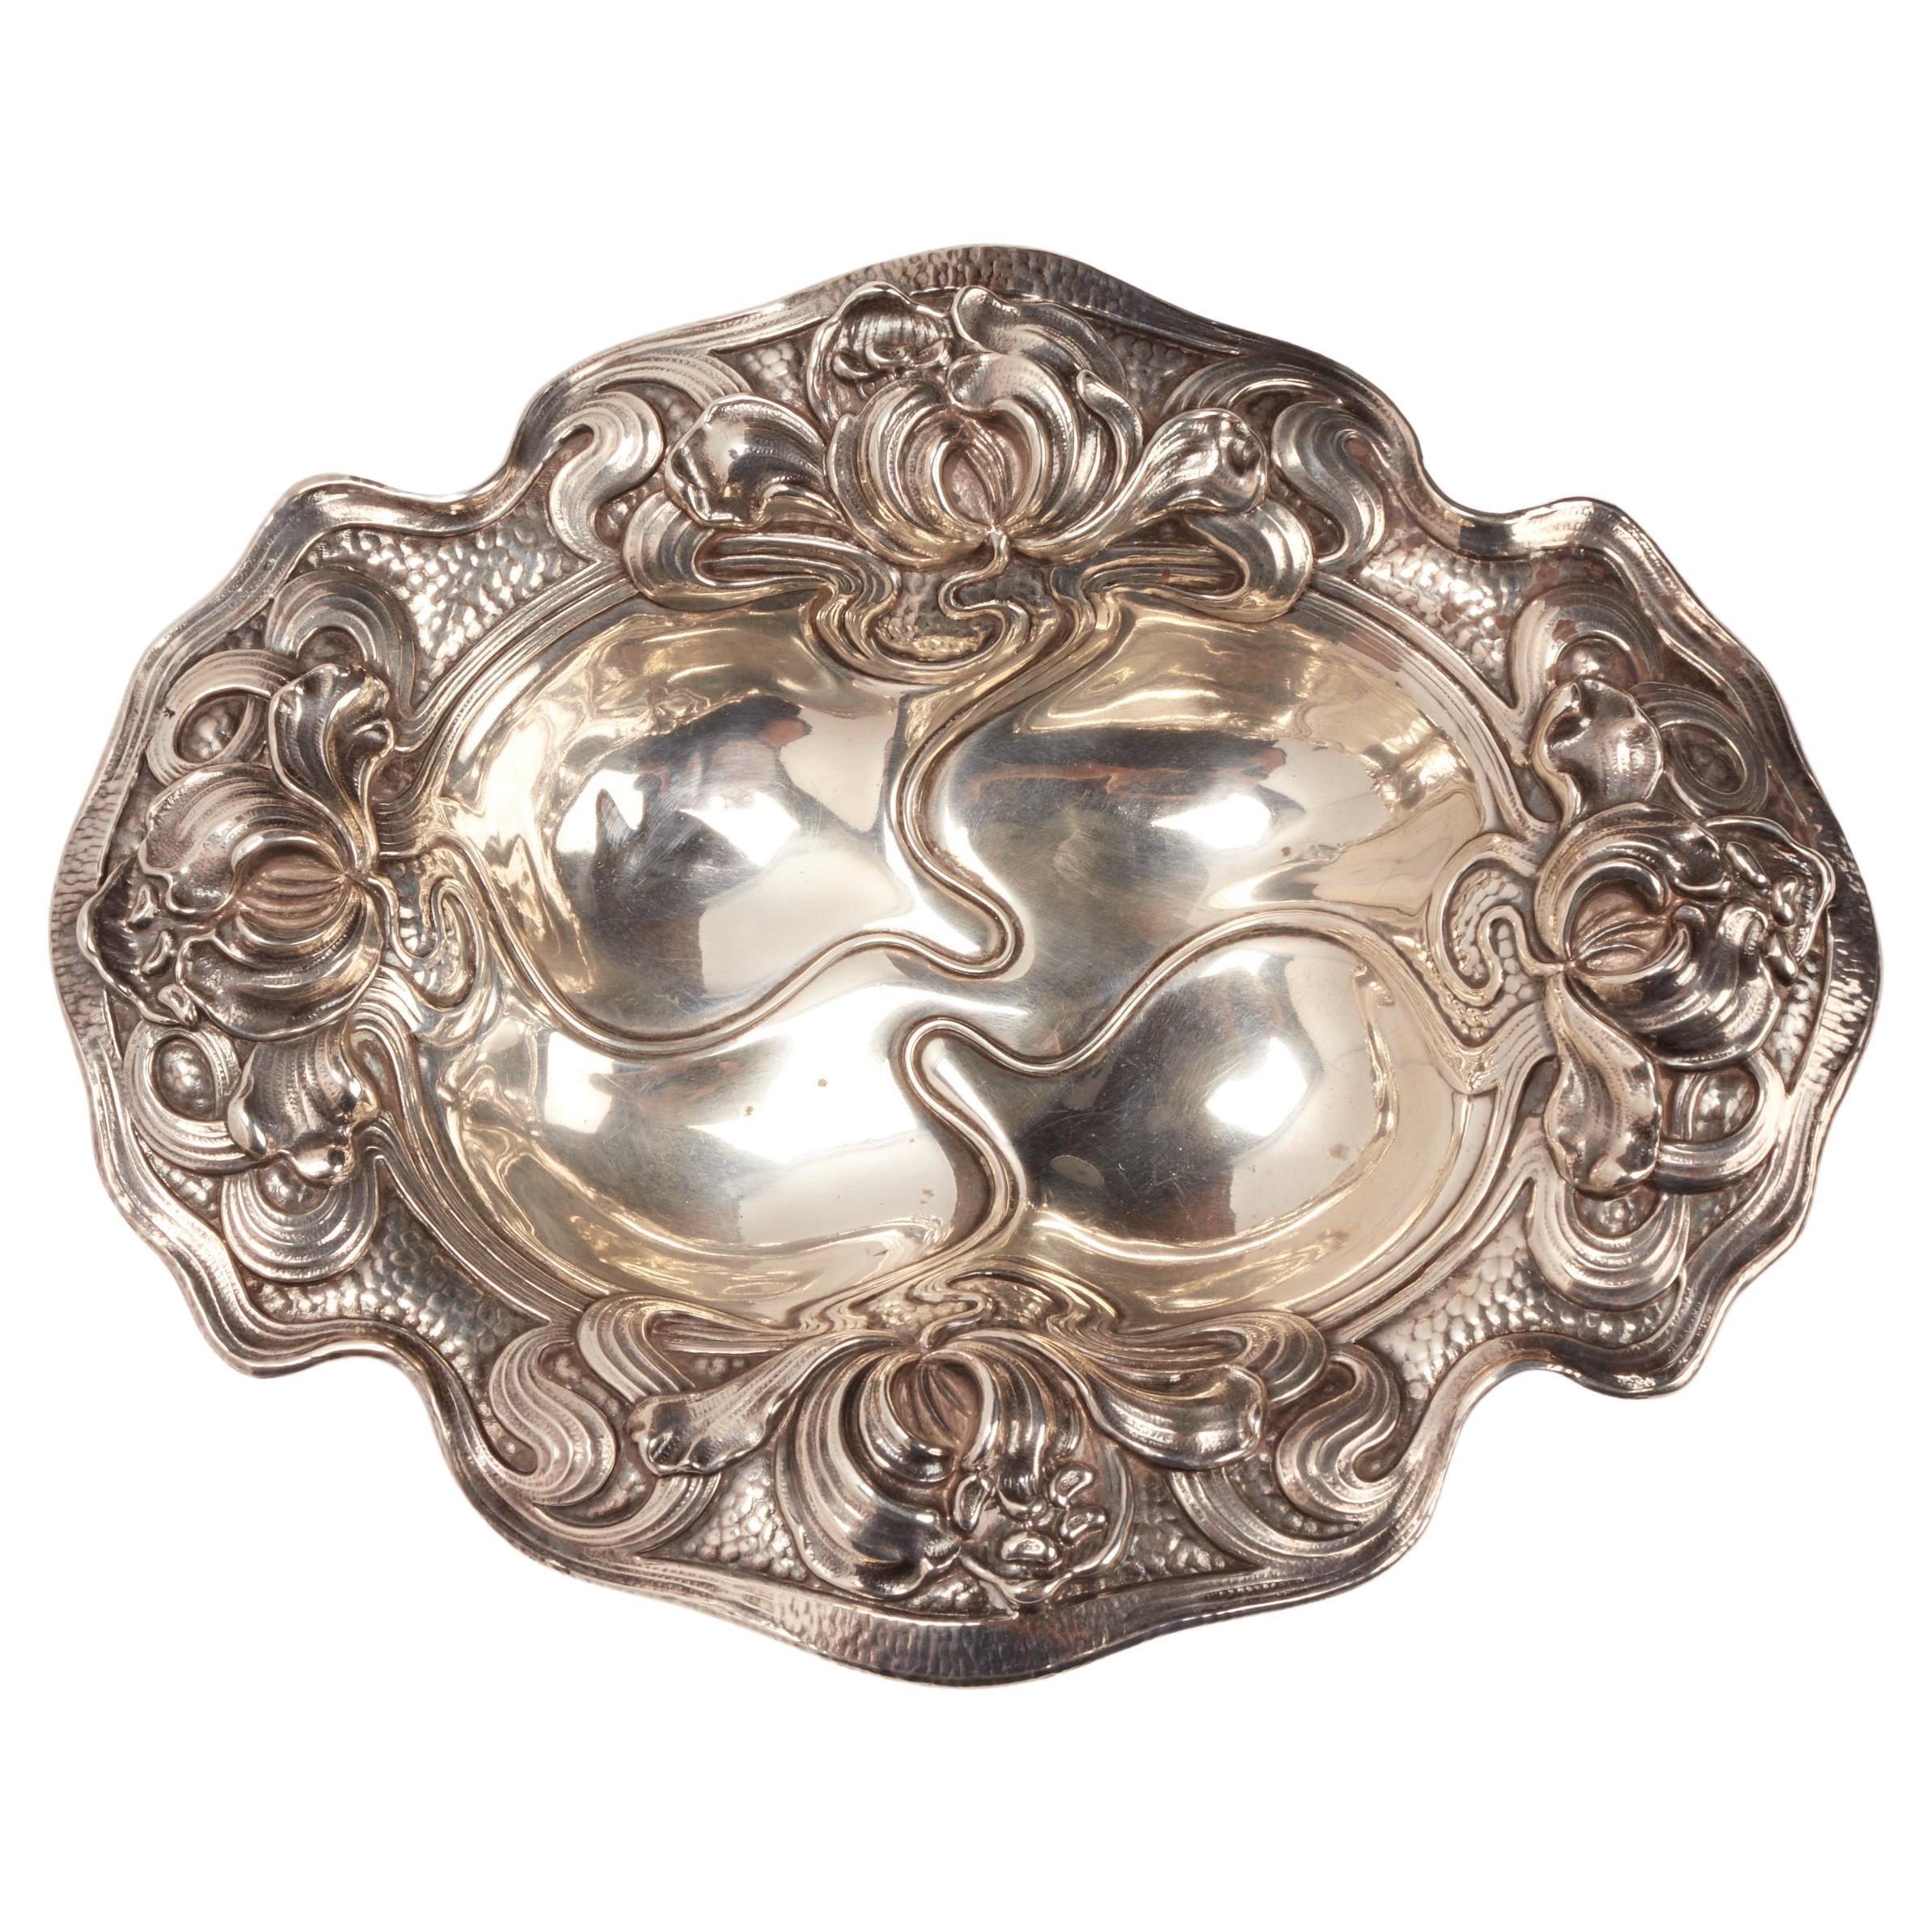 Art nouveau sterling silver bowl, USA 1890. 